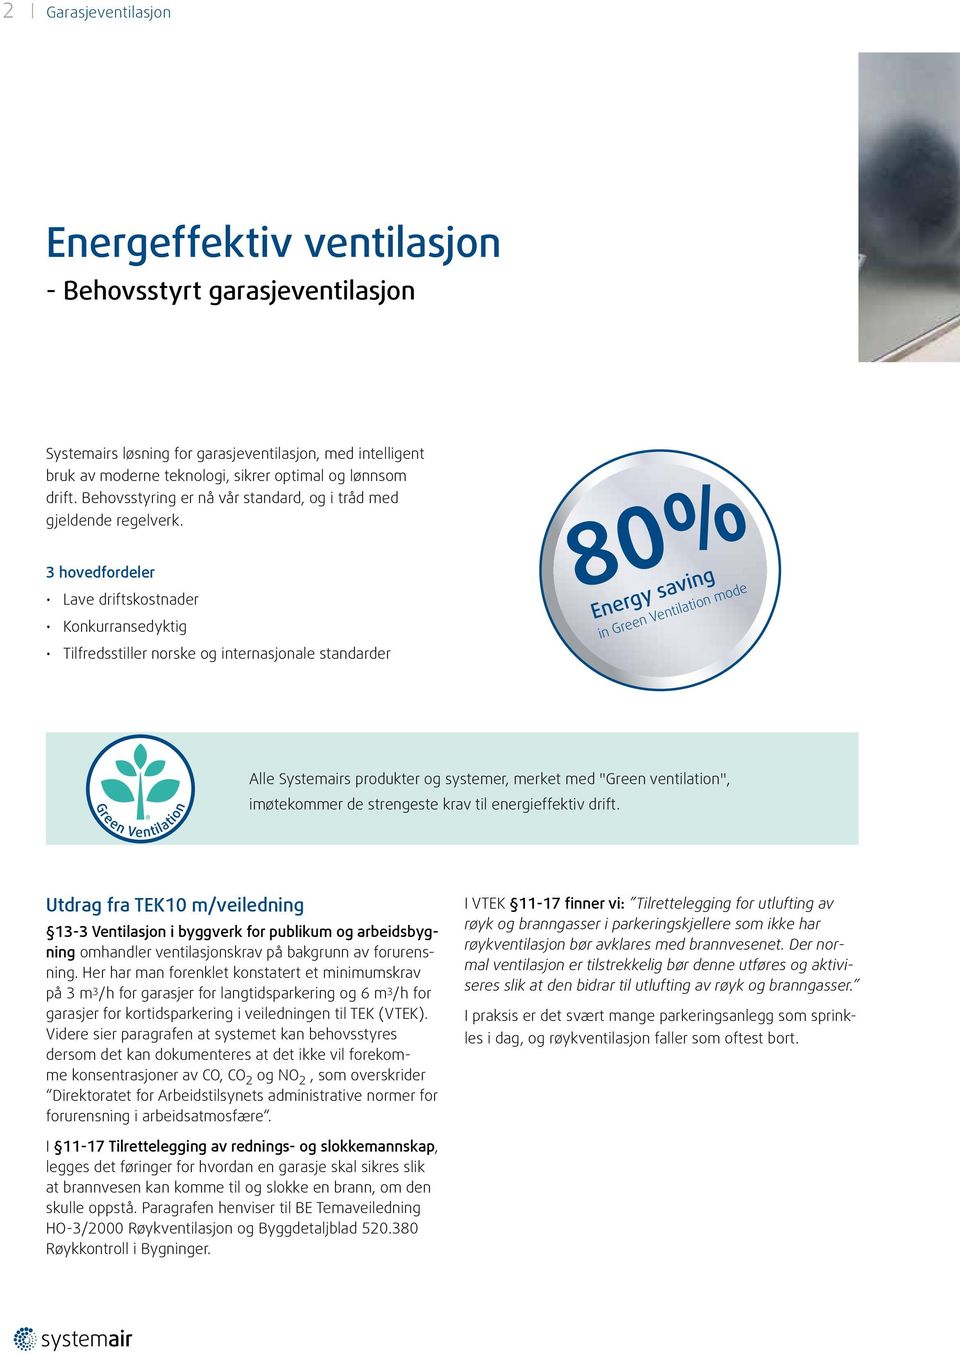 3 hovedfordeler Lave driftskostnader Konkurransedyktig Tilfredsstiller norske og internasjonale standarder 80% Energy saving in Green Ventilation mode Alle Systemairs produkter og systemer, merket